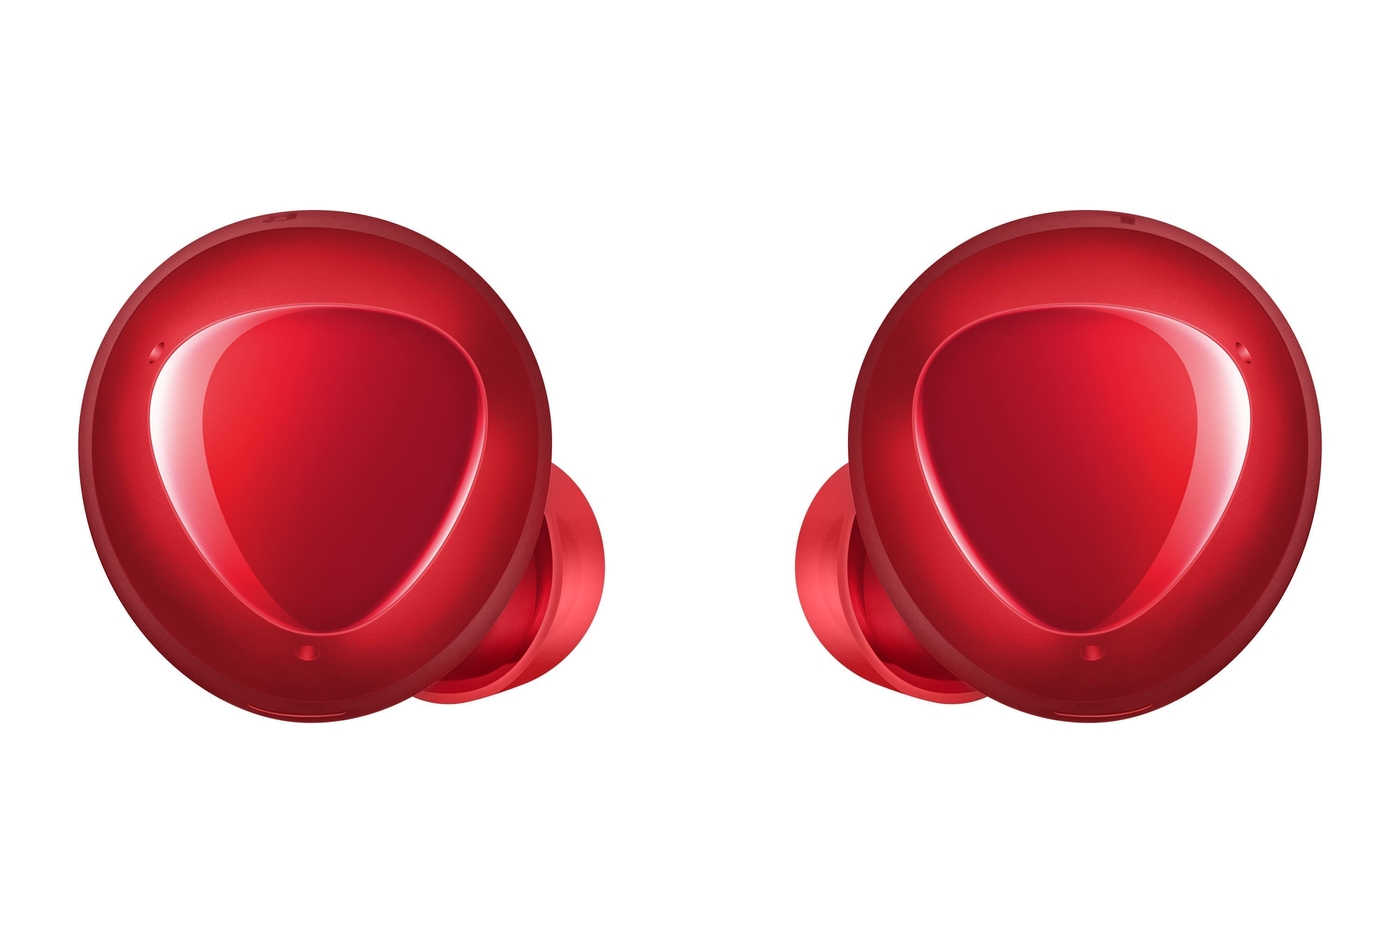 Audífonos SAMSUNG Galaxy Buds + Rojo